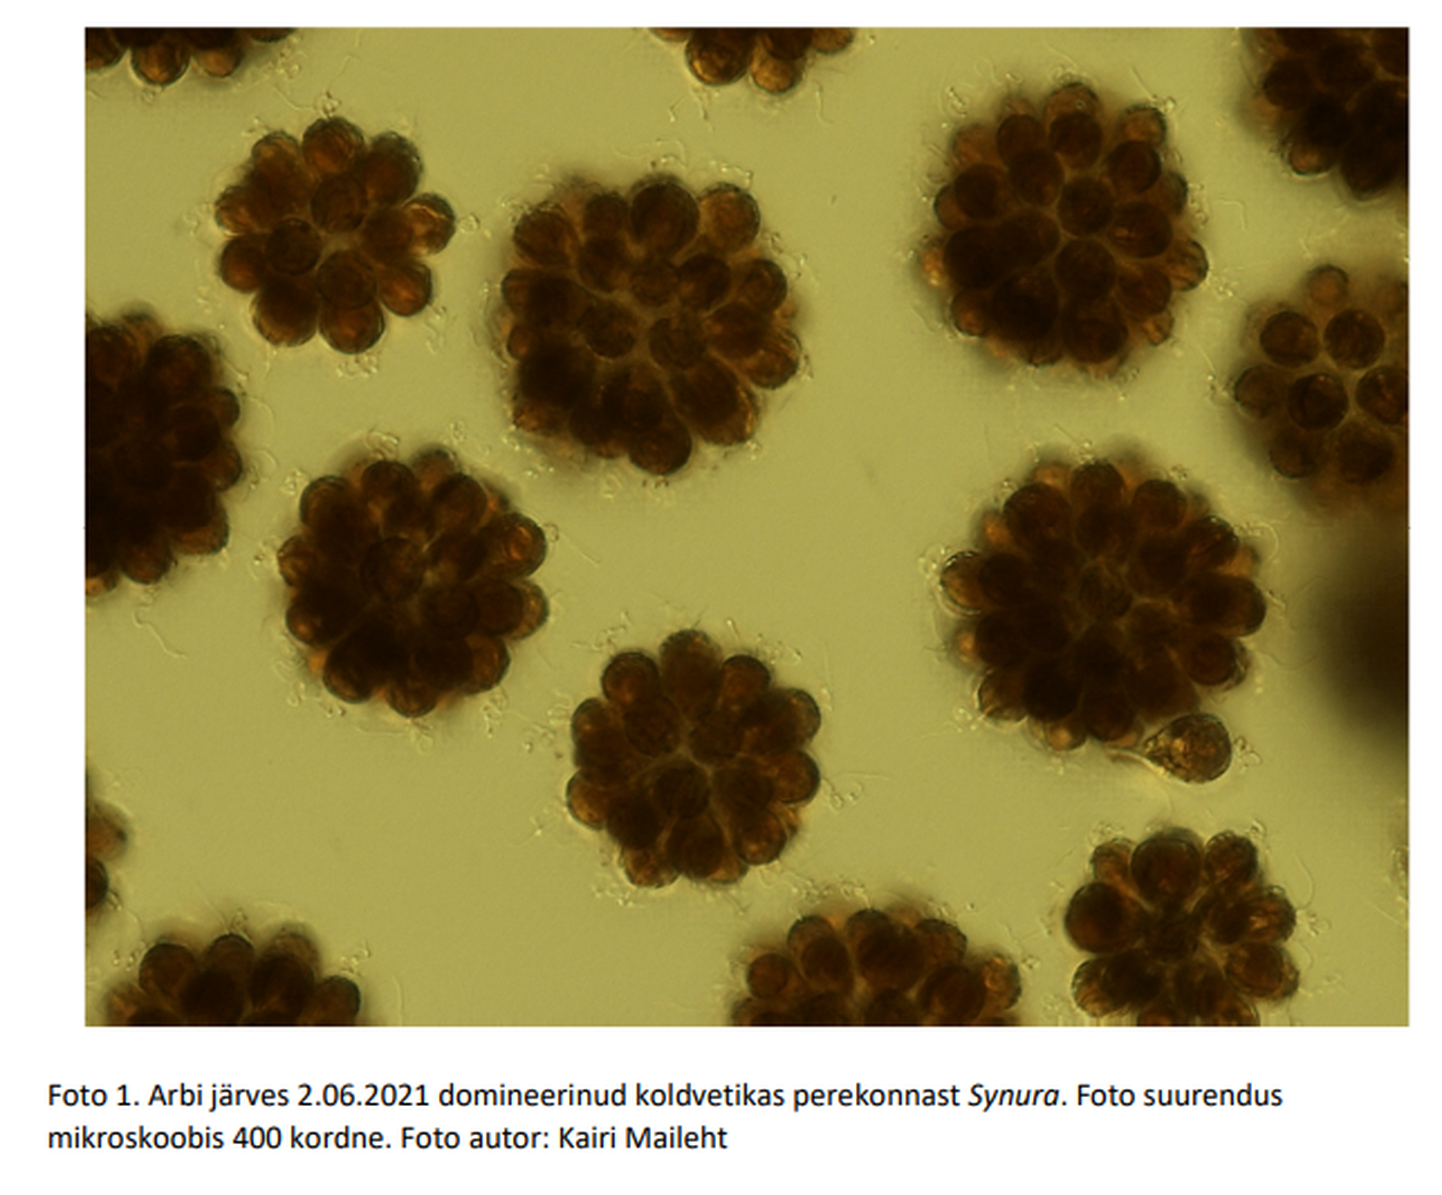 Arbi järvest leitud koldvetikas Synura perekonnast. Fotol mikroskoobis 400-kordselt suurendatud vetikas.